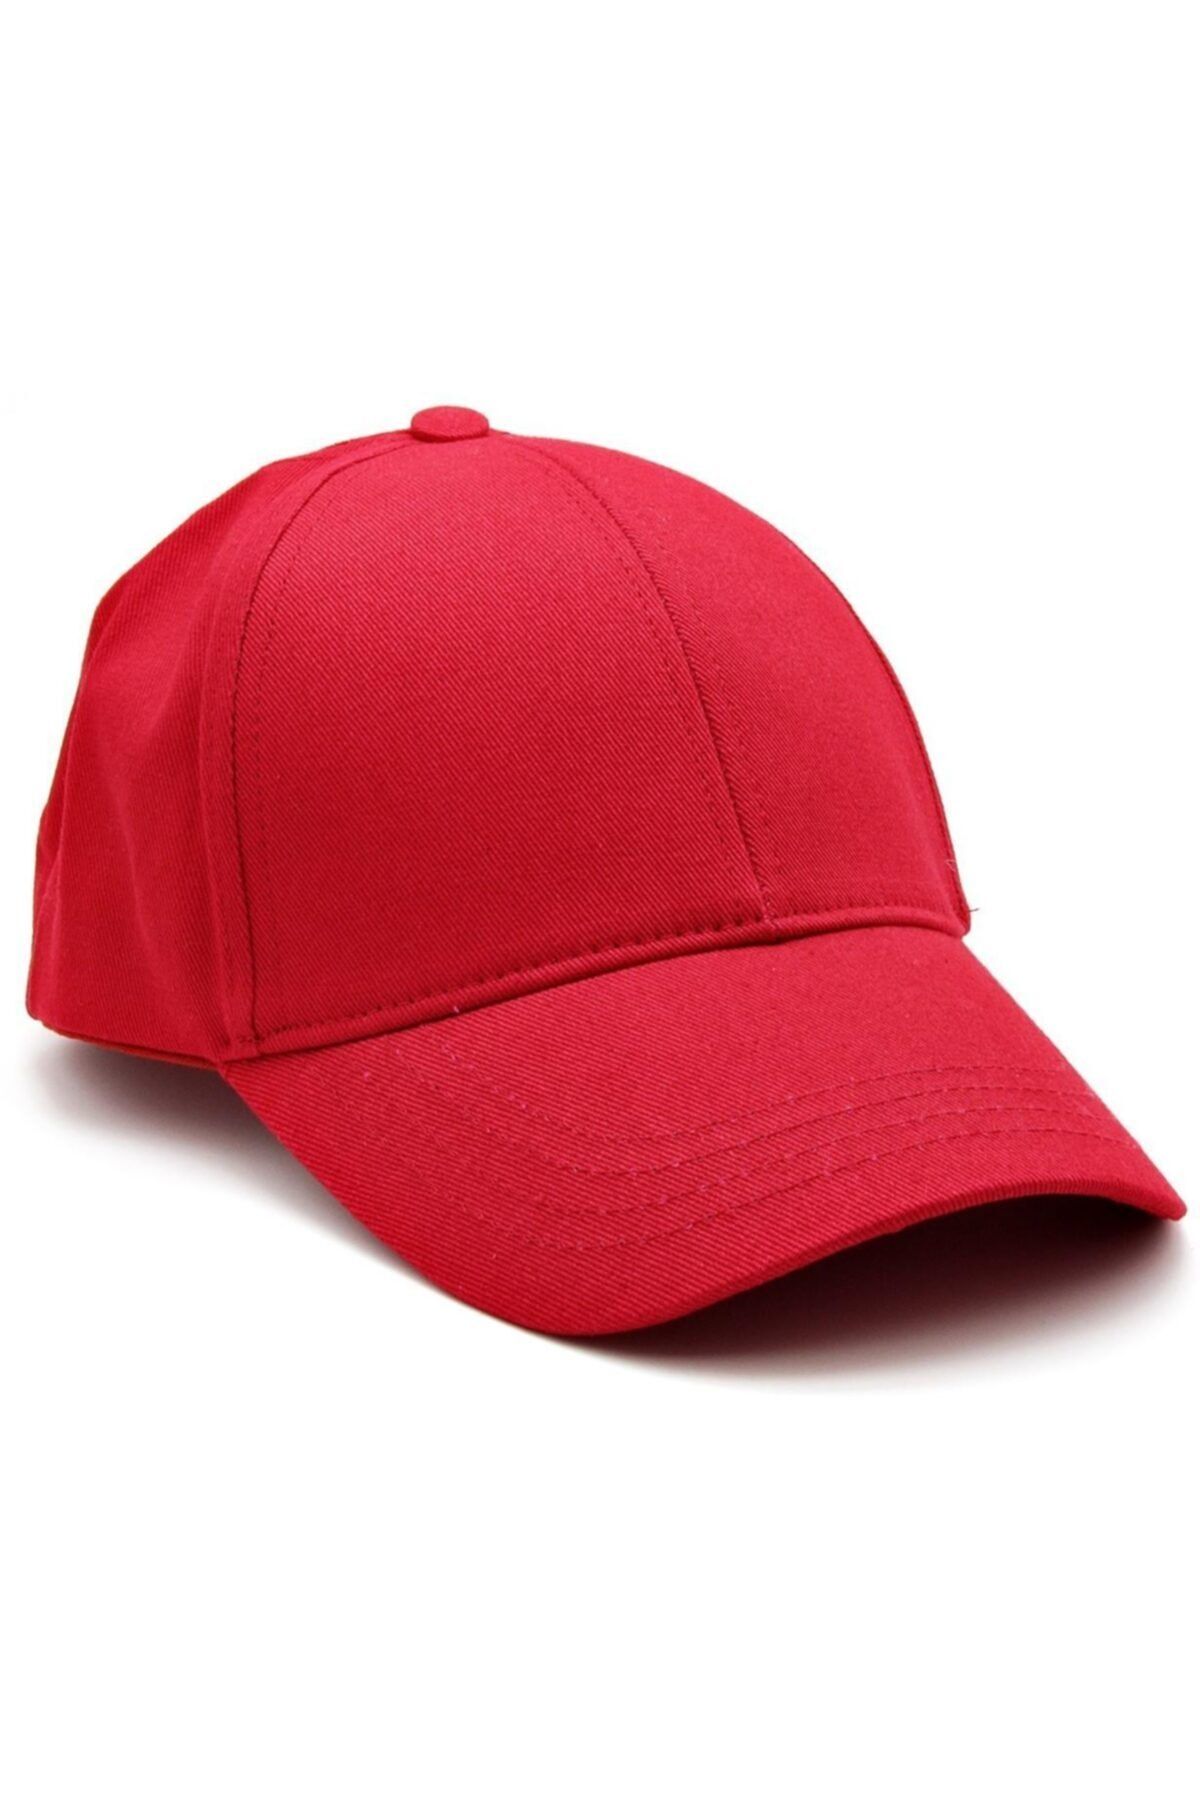 Takı Dükkanı Baskısız Unisex Cap Erkek Şapka cp219